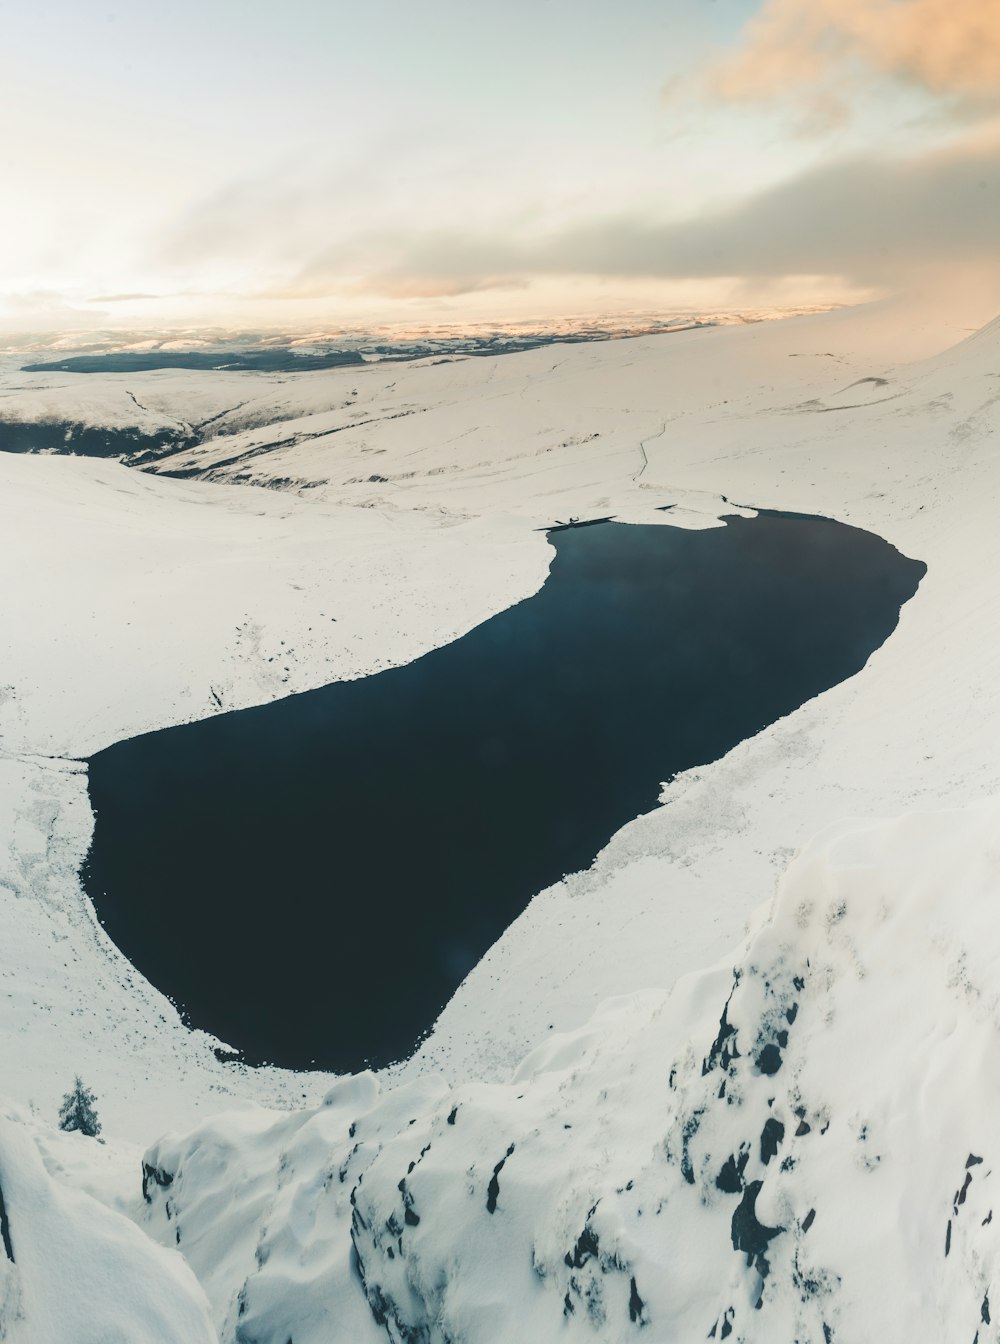 corpo de água calmo cercado com terreno montanhoso coberto de neve durante o dia